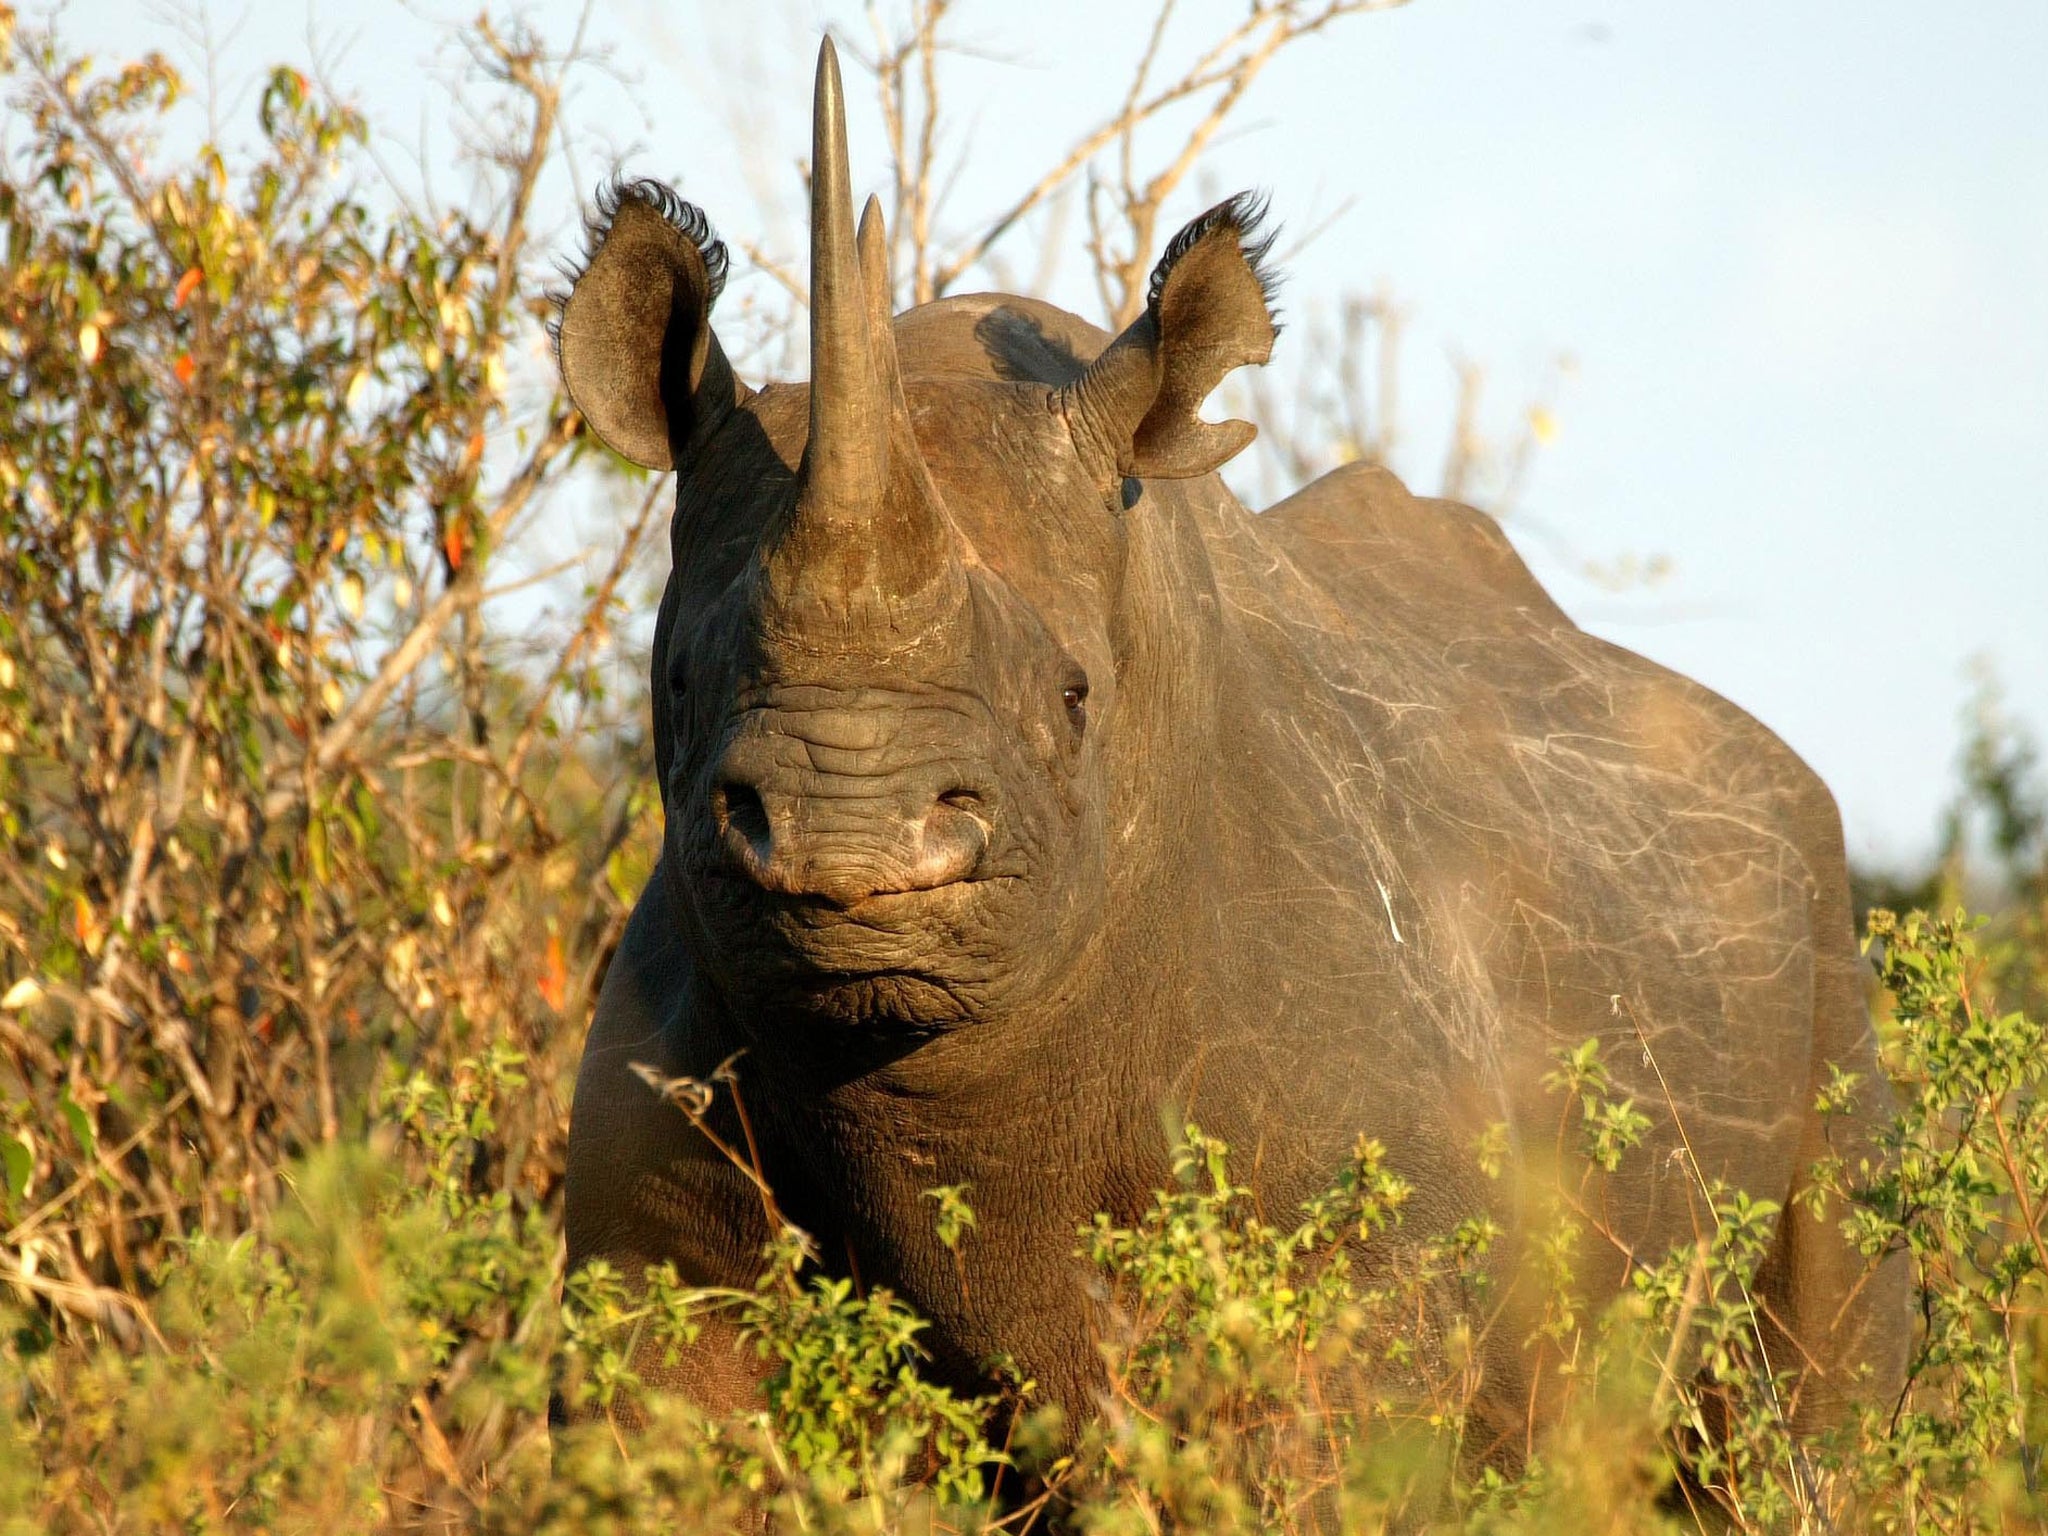 World's 'oldest rhino' dies at 57 